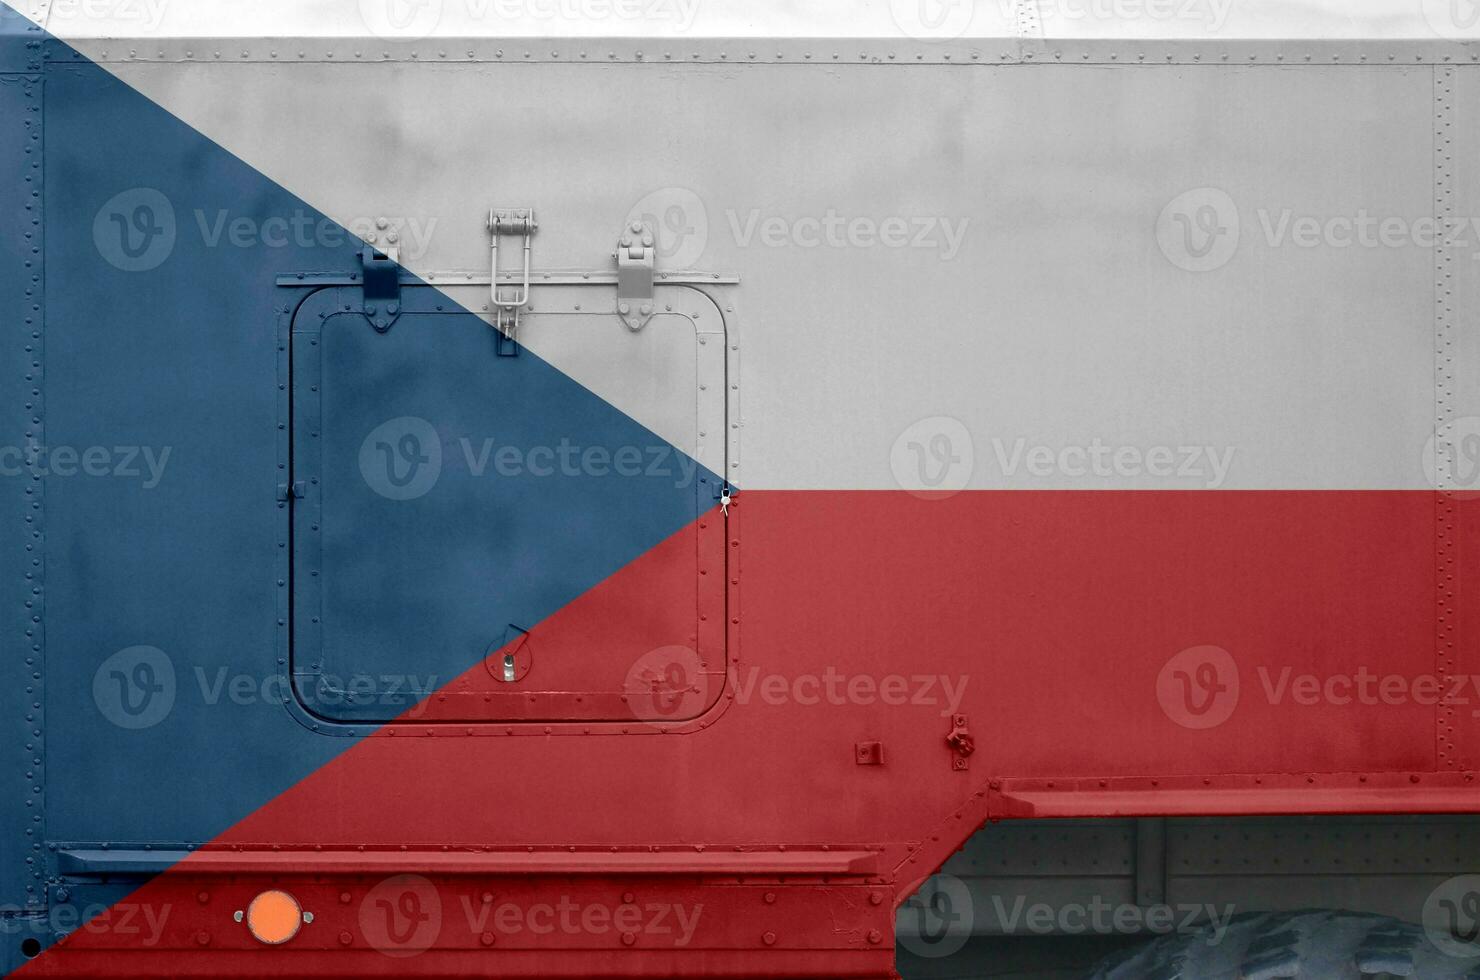 Tsjechisch vlag afgebeeld Aan kant een deel van leger gepantserd vrachtauto detailopname. leger krachten conceptuele achtergrond foto